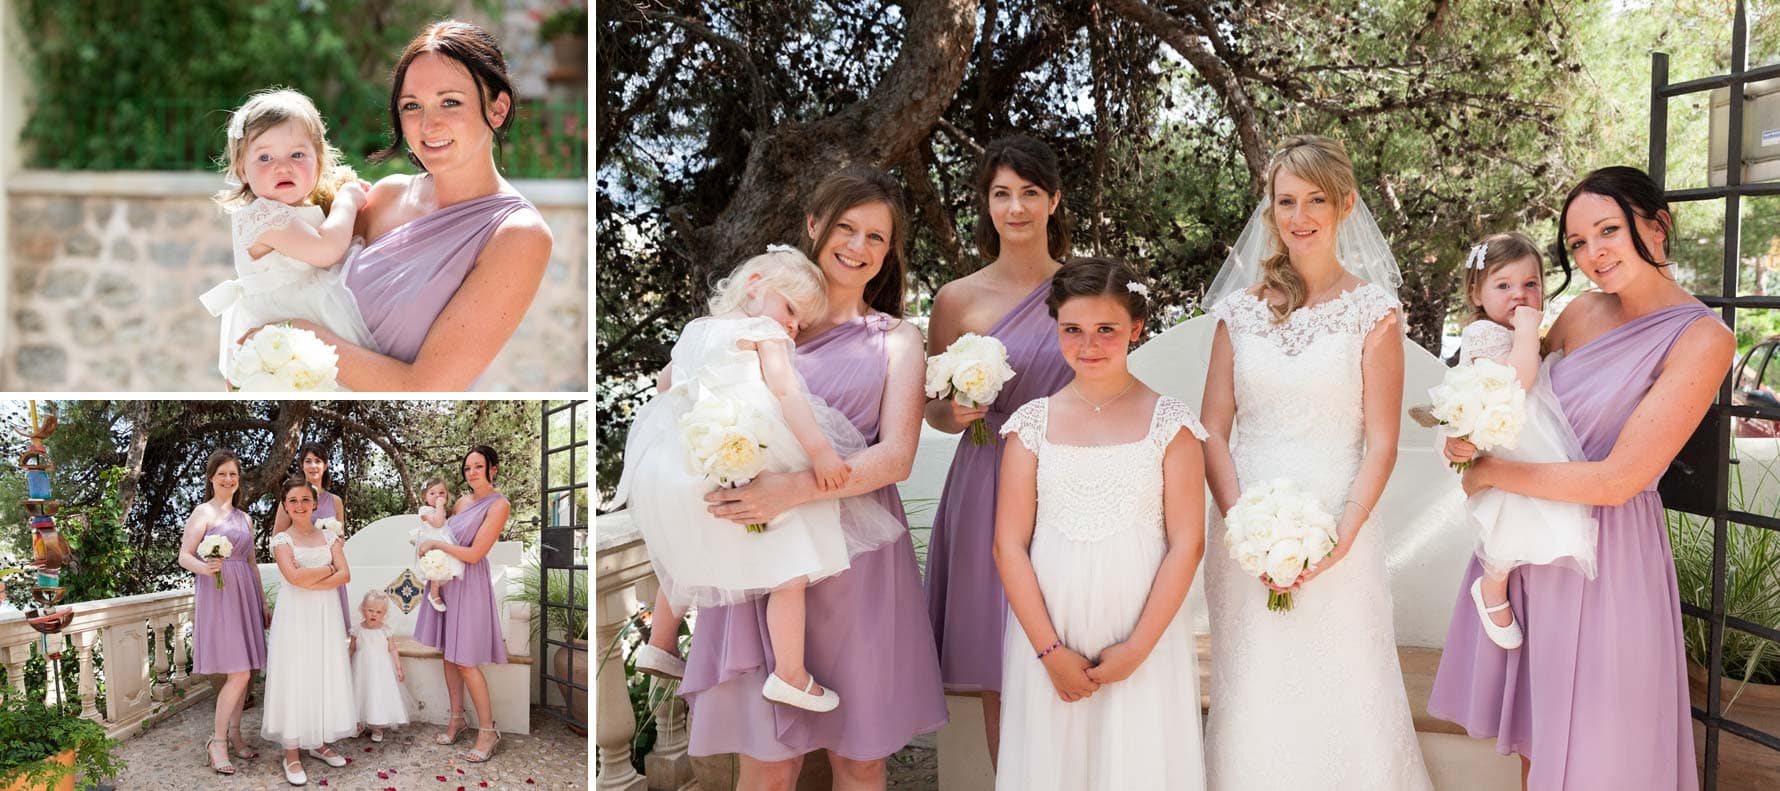 The bridesmaids by Mallorca wedding photographer in Port de Soller